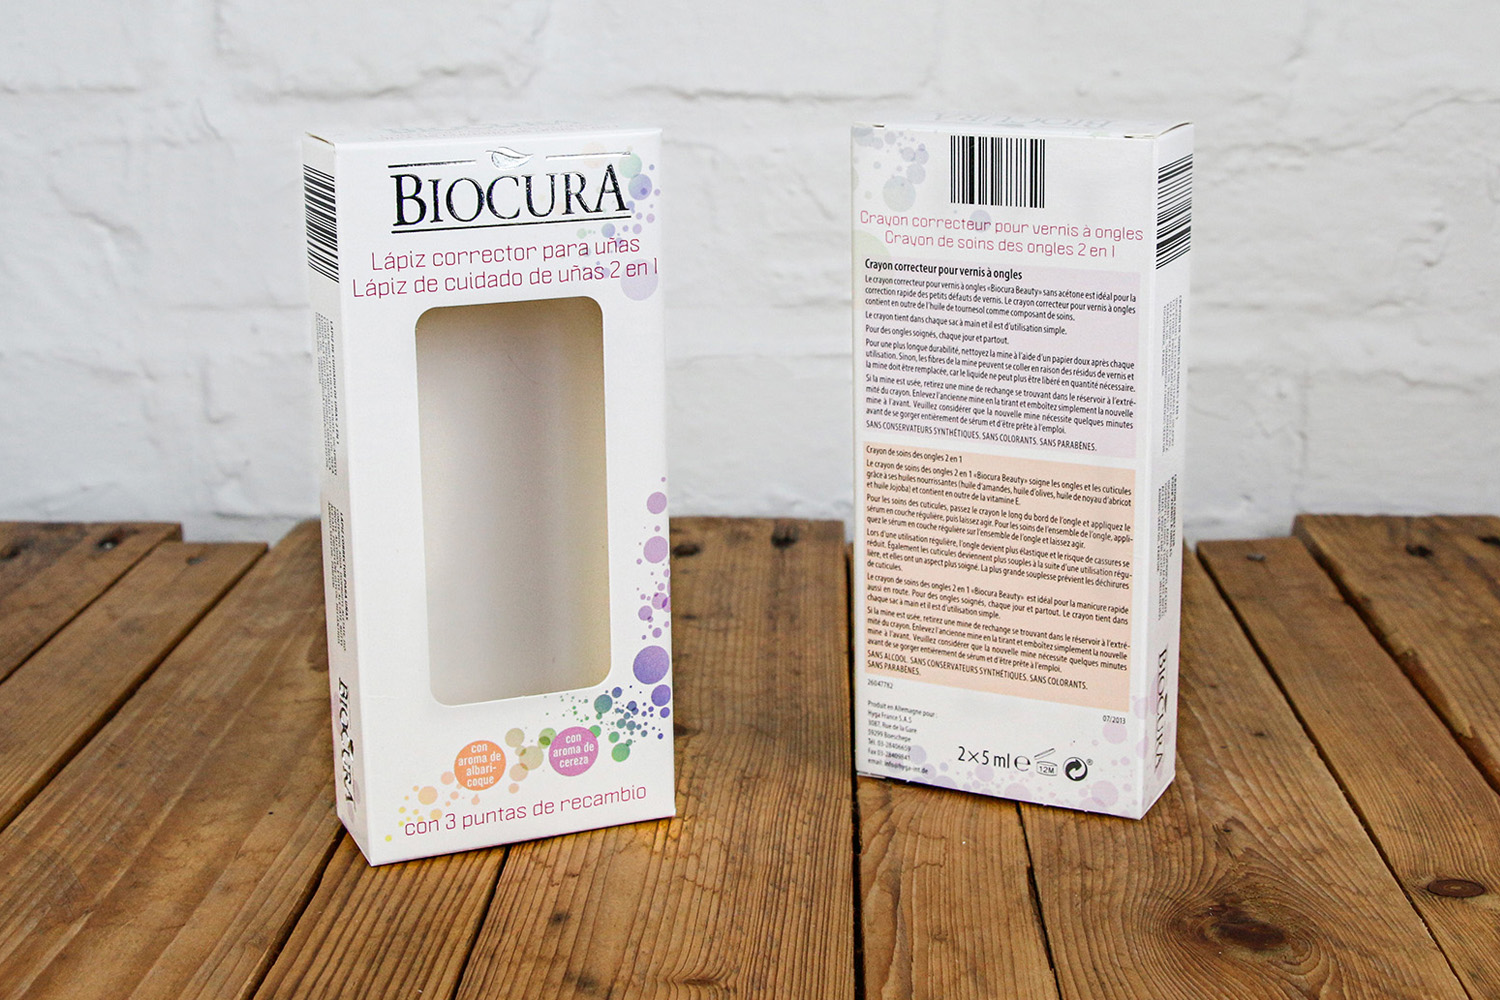 Faltschachtel Ausstanzung Kosmetik Biocura Beutler Packaging 3